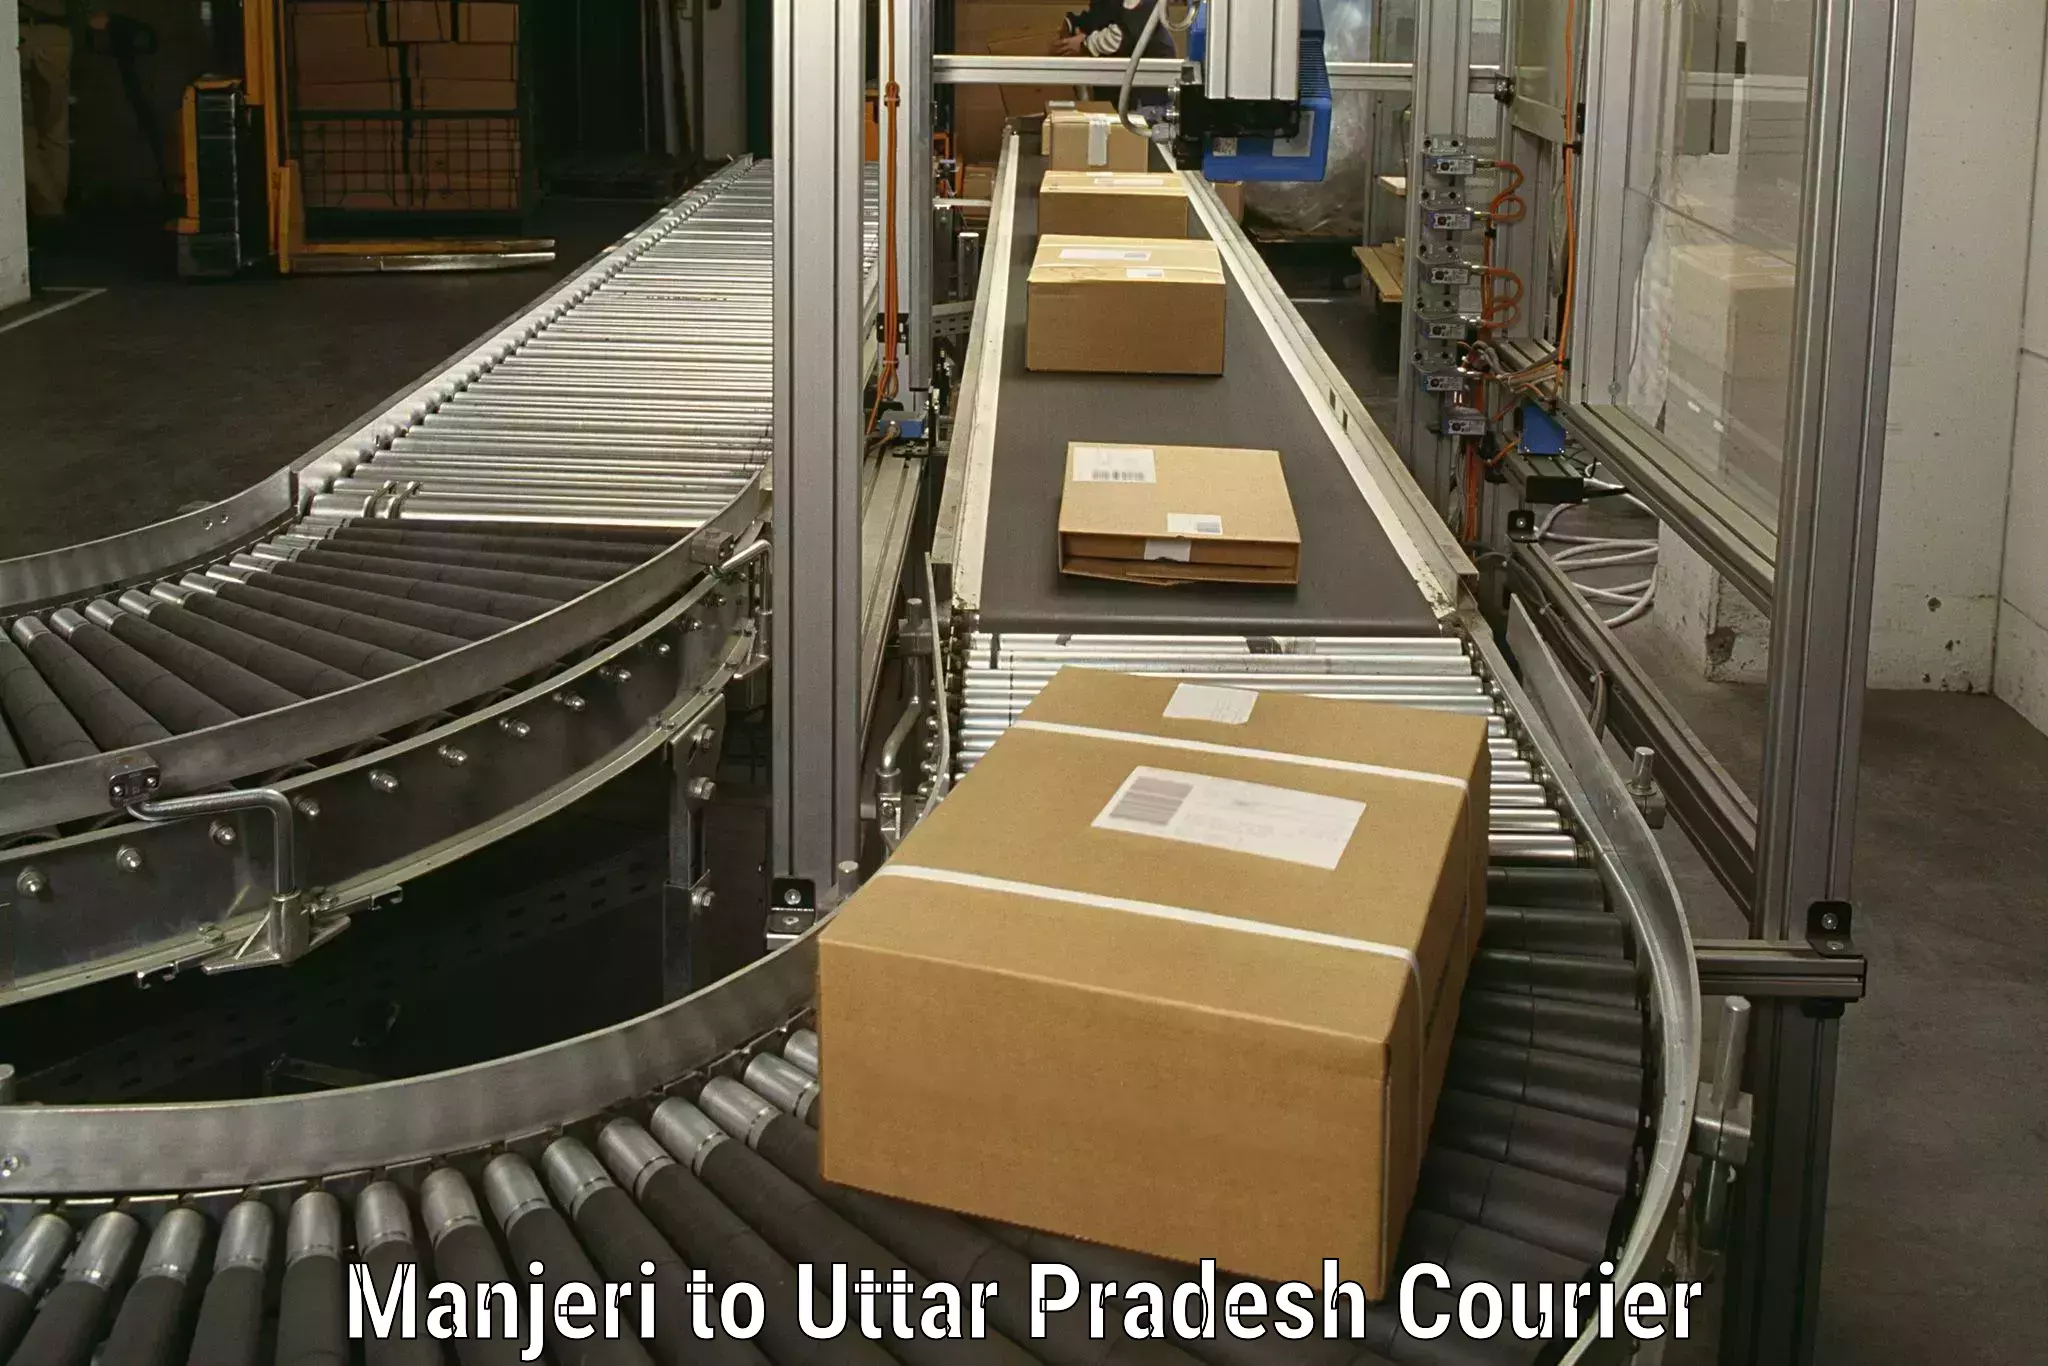 Professional packing services Manjeri to Kulpahar